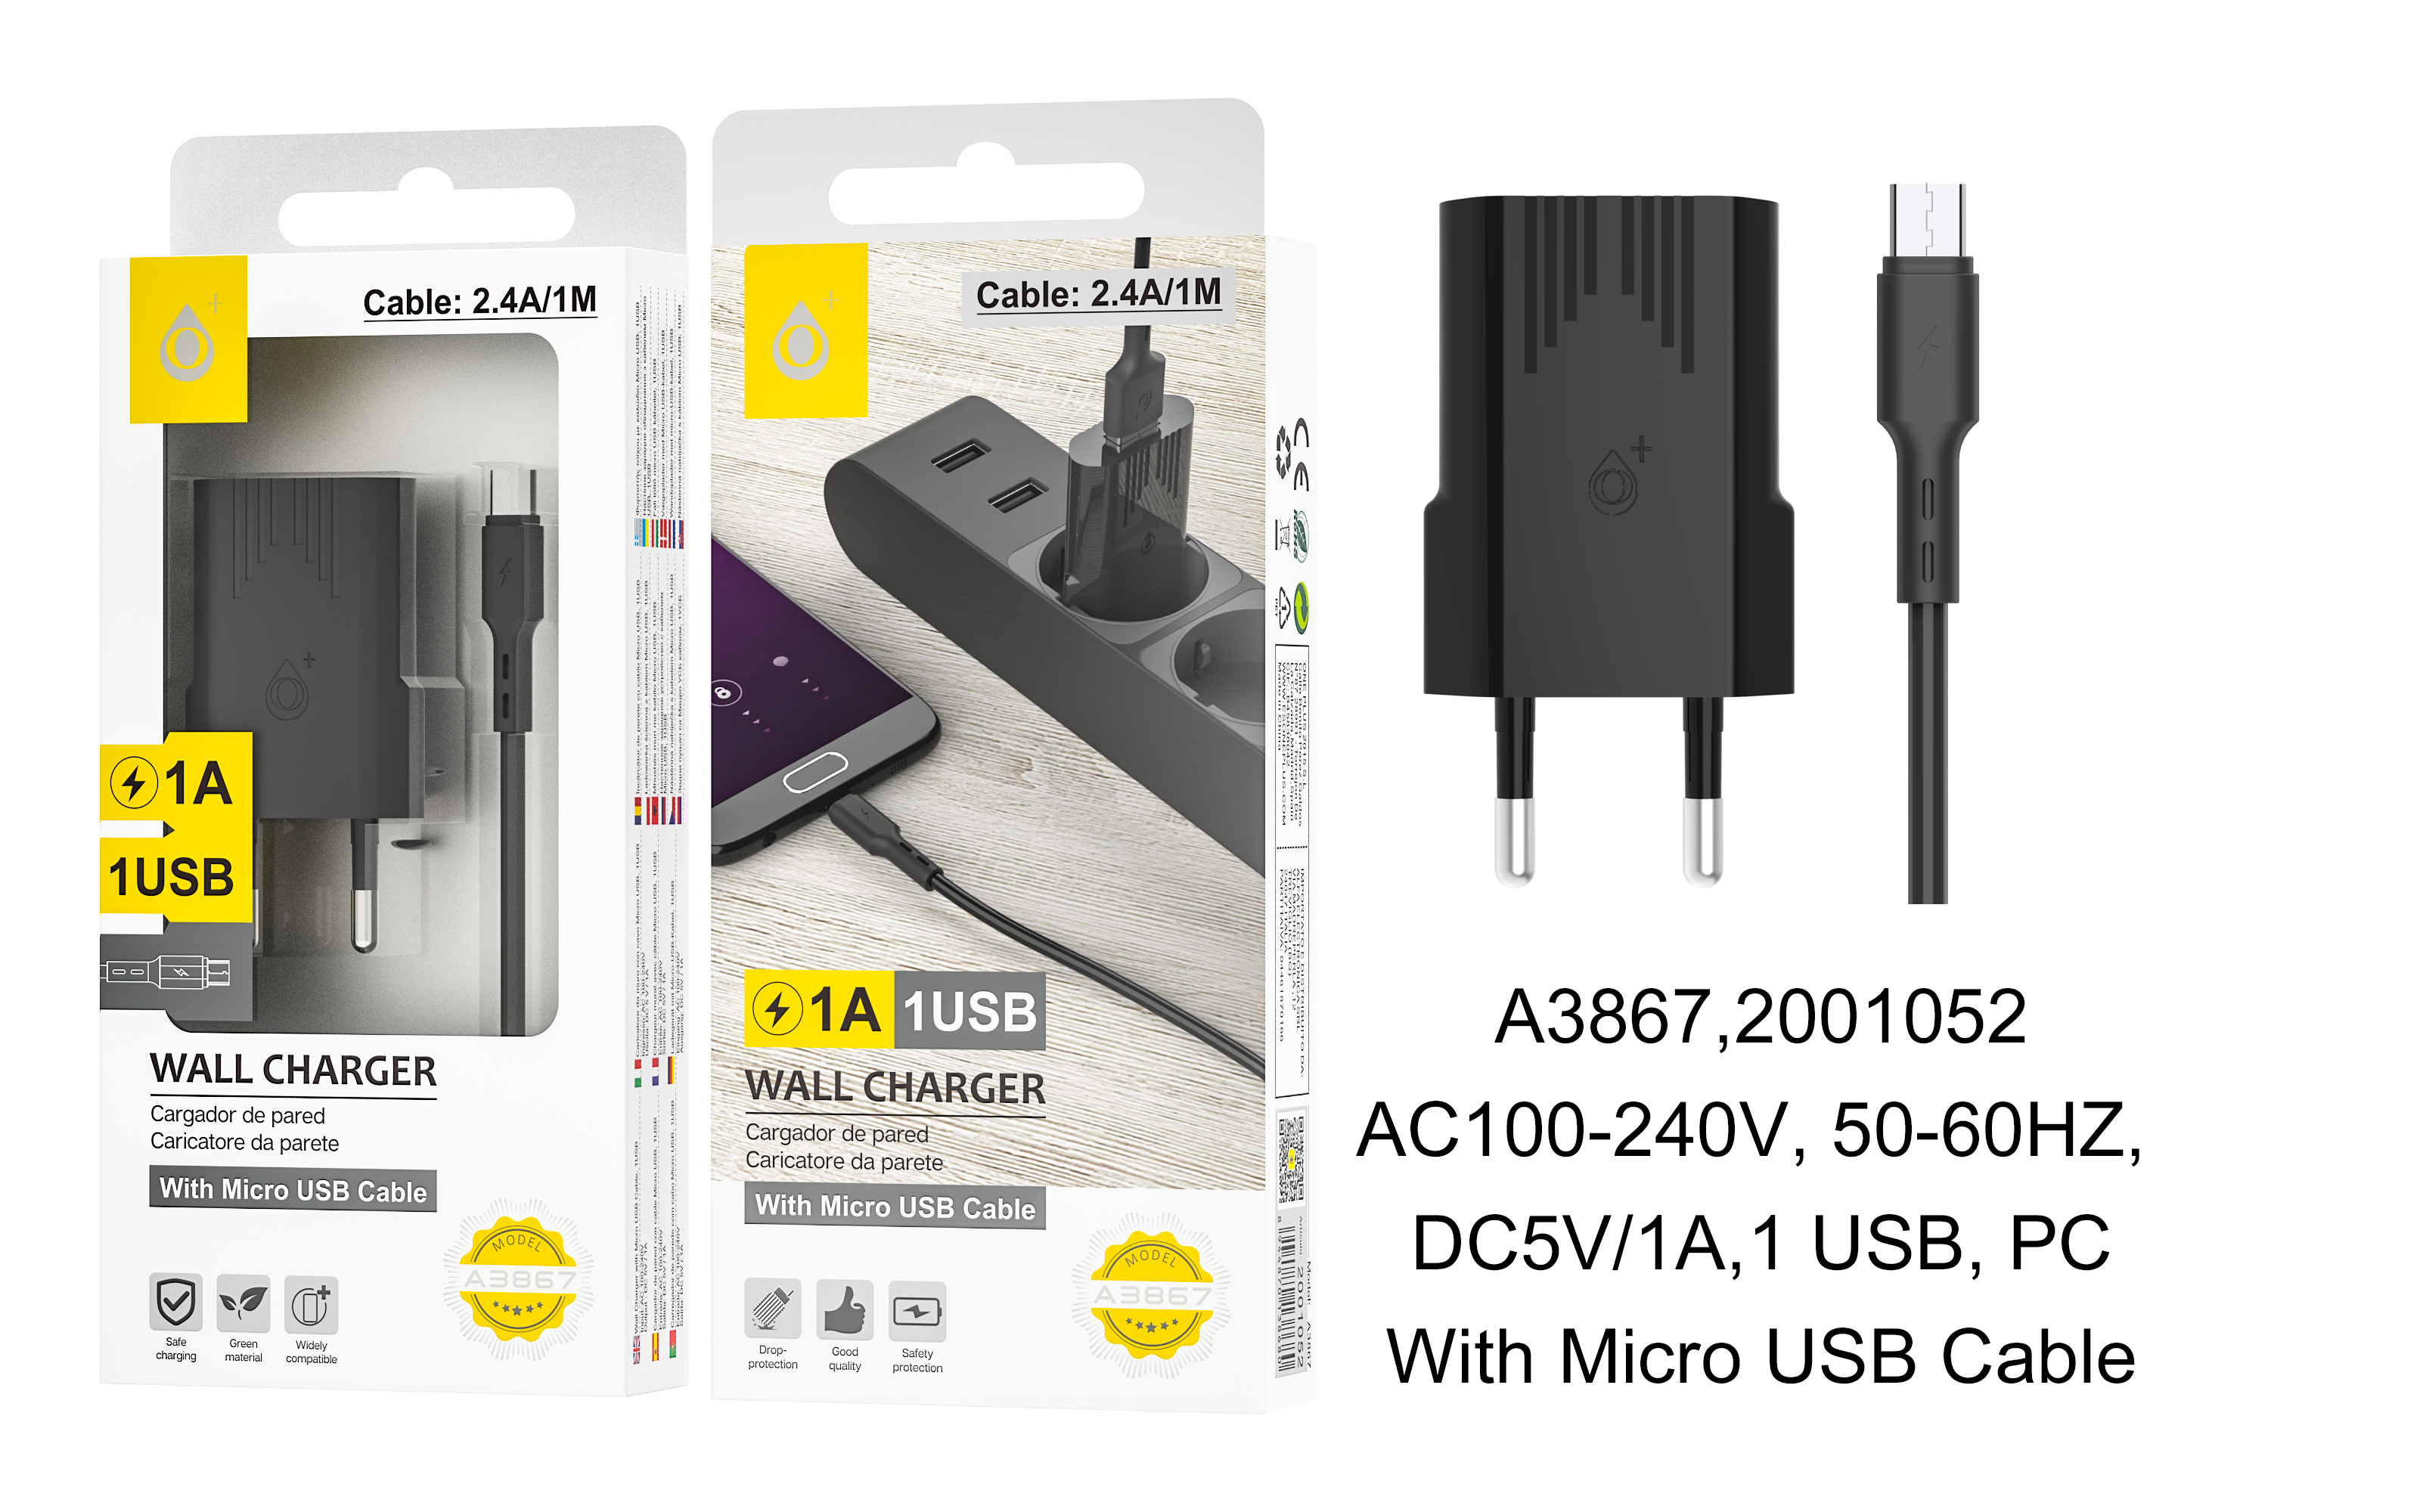 A3867 NE Cargador Red Mono con Cable MicroUSB , 1 USB, 5V/1A,Negro